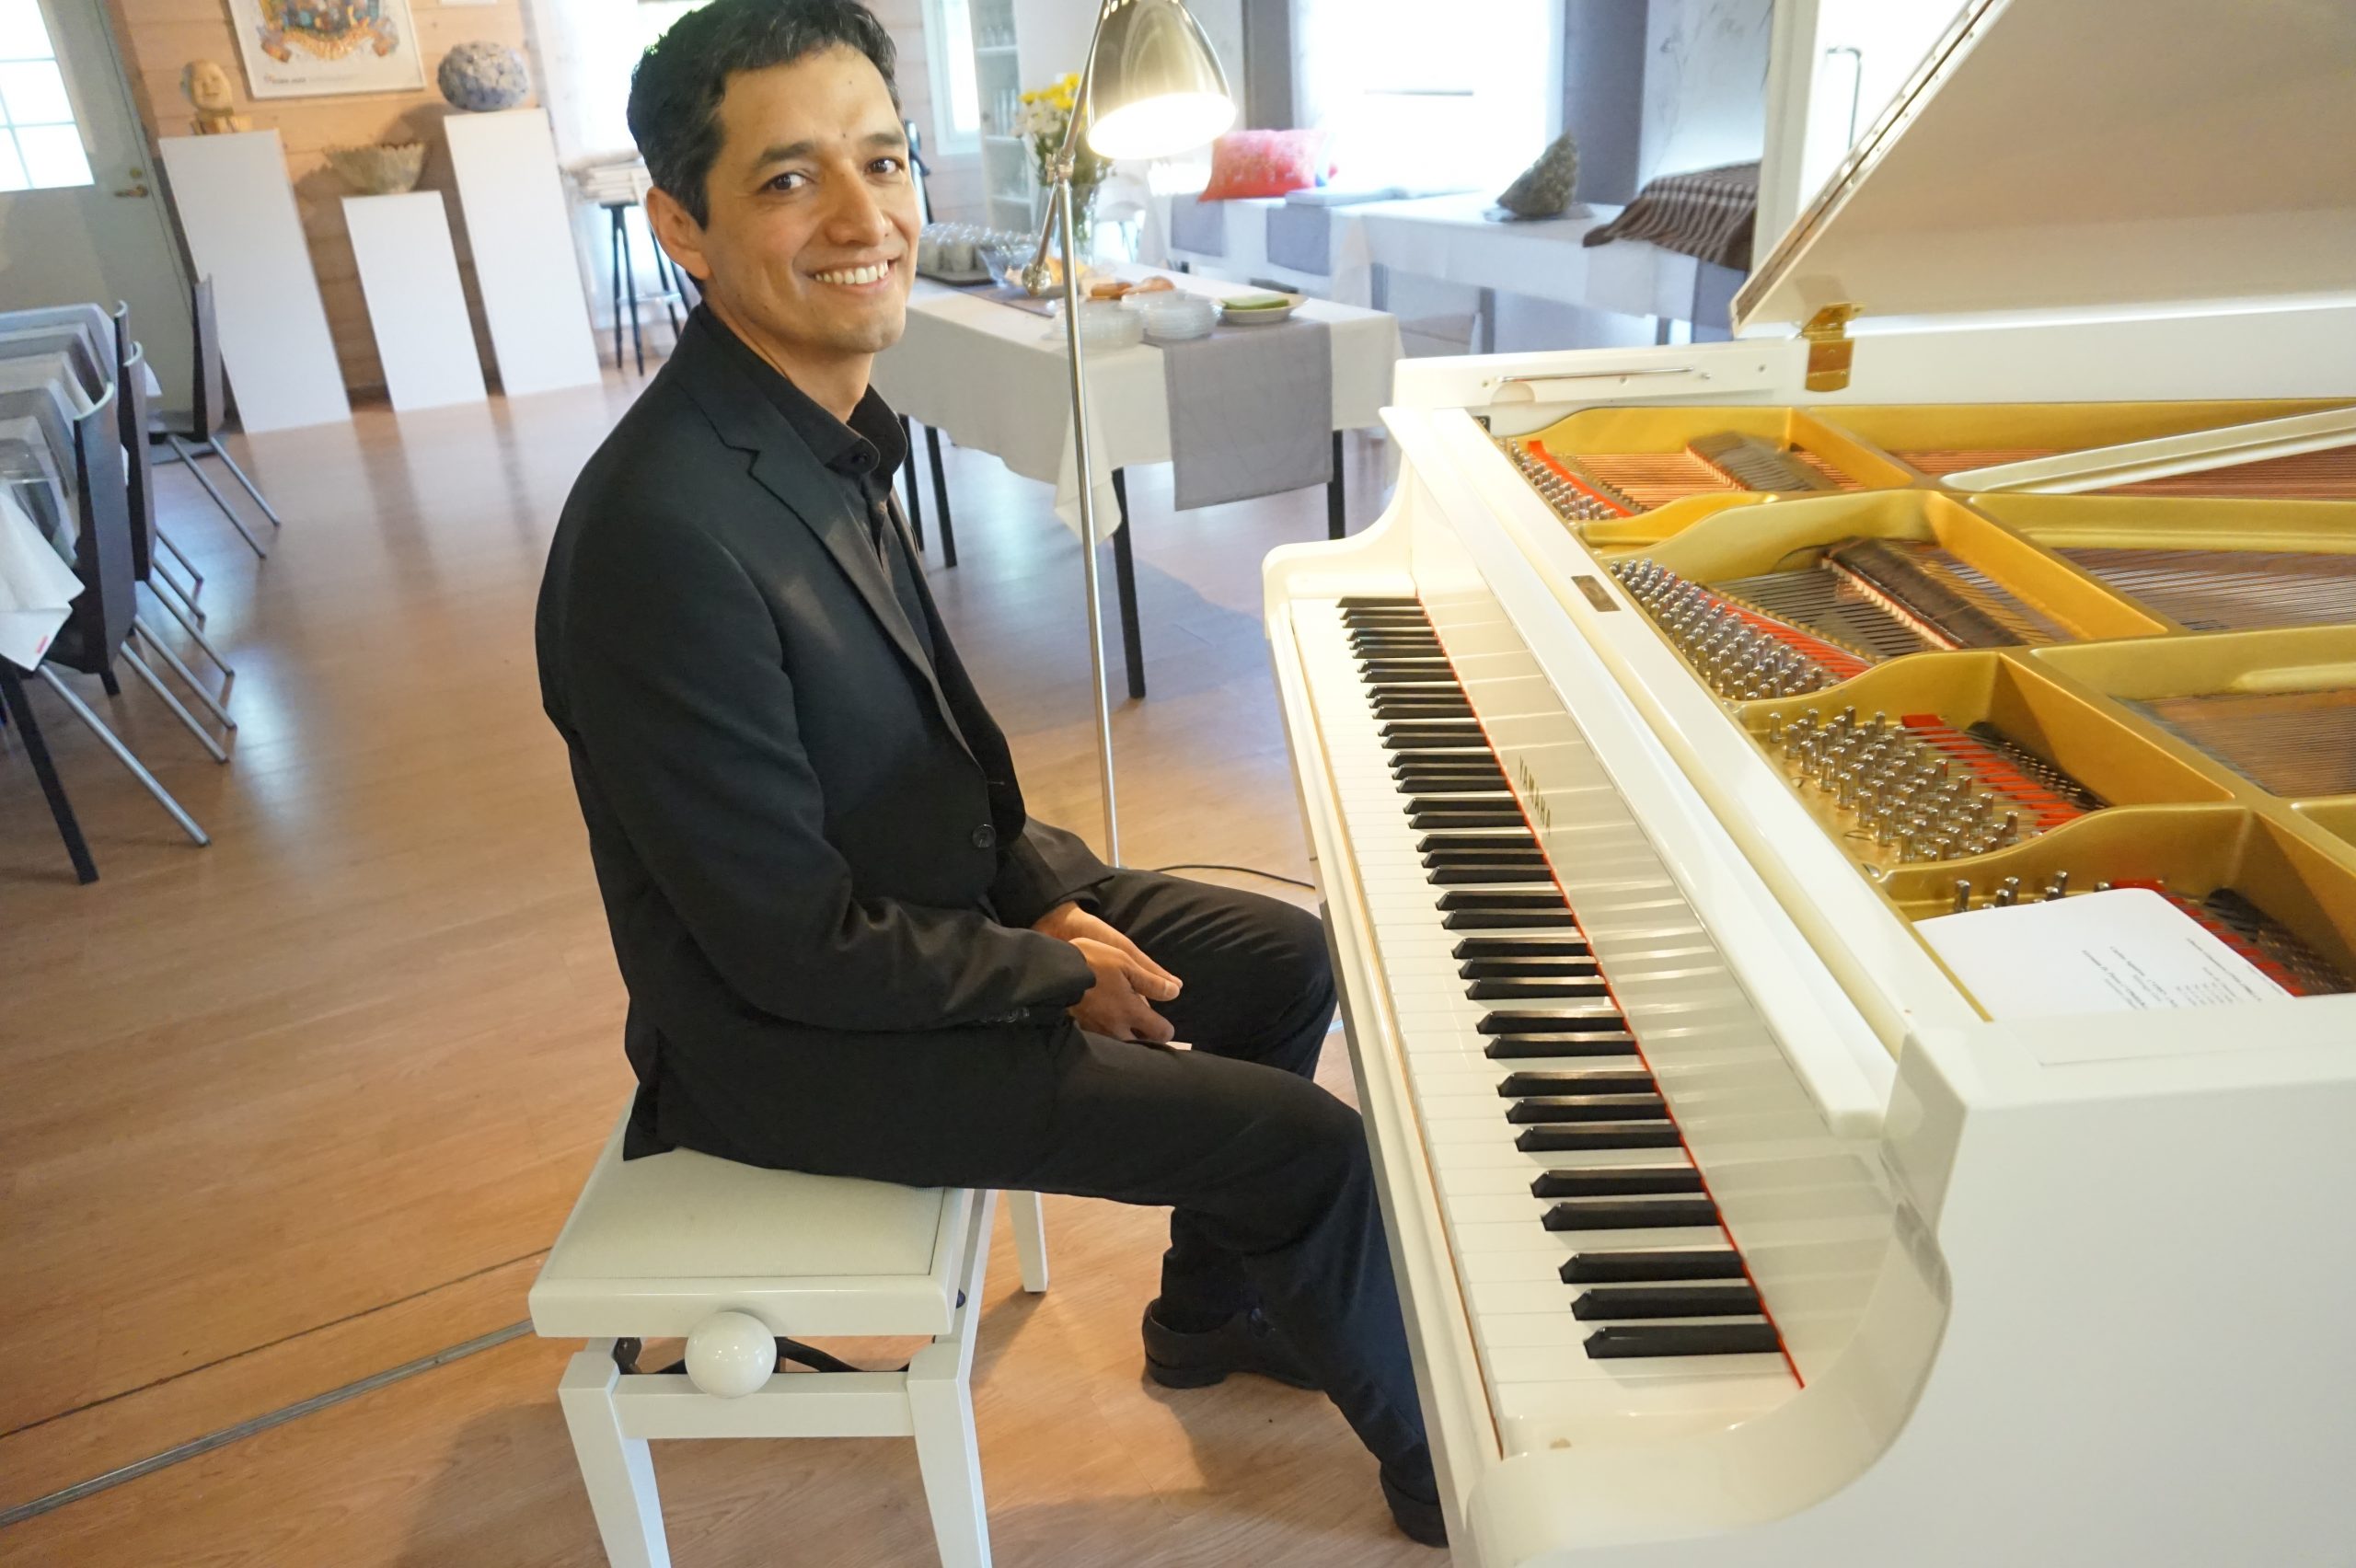 Pianotaiteilija Pablo Rojas konsertoi juhannusviikon keskiviikkoiltana Urkin Piilopirtin paviljongissa. Kolumbialaissyntyinen pianisti tarjoili kattavan ohjelman eteläamerikkalaista musiikkia. (Kuva: Matti Pulkkinen)